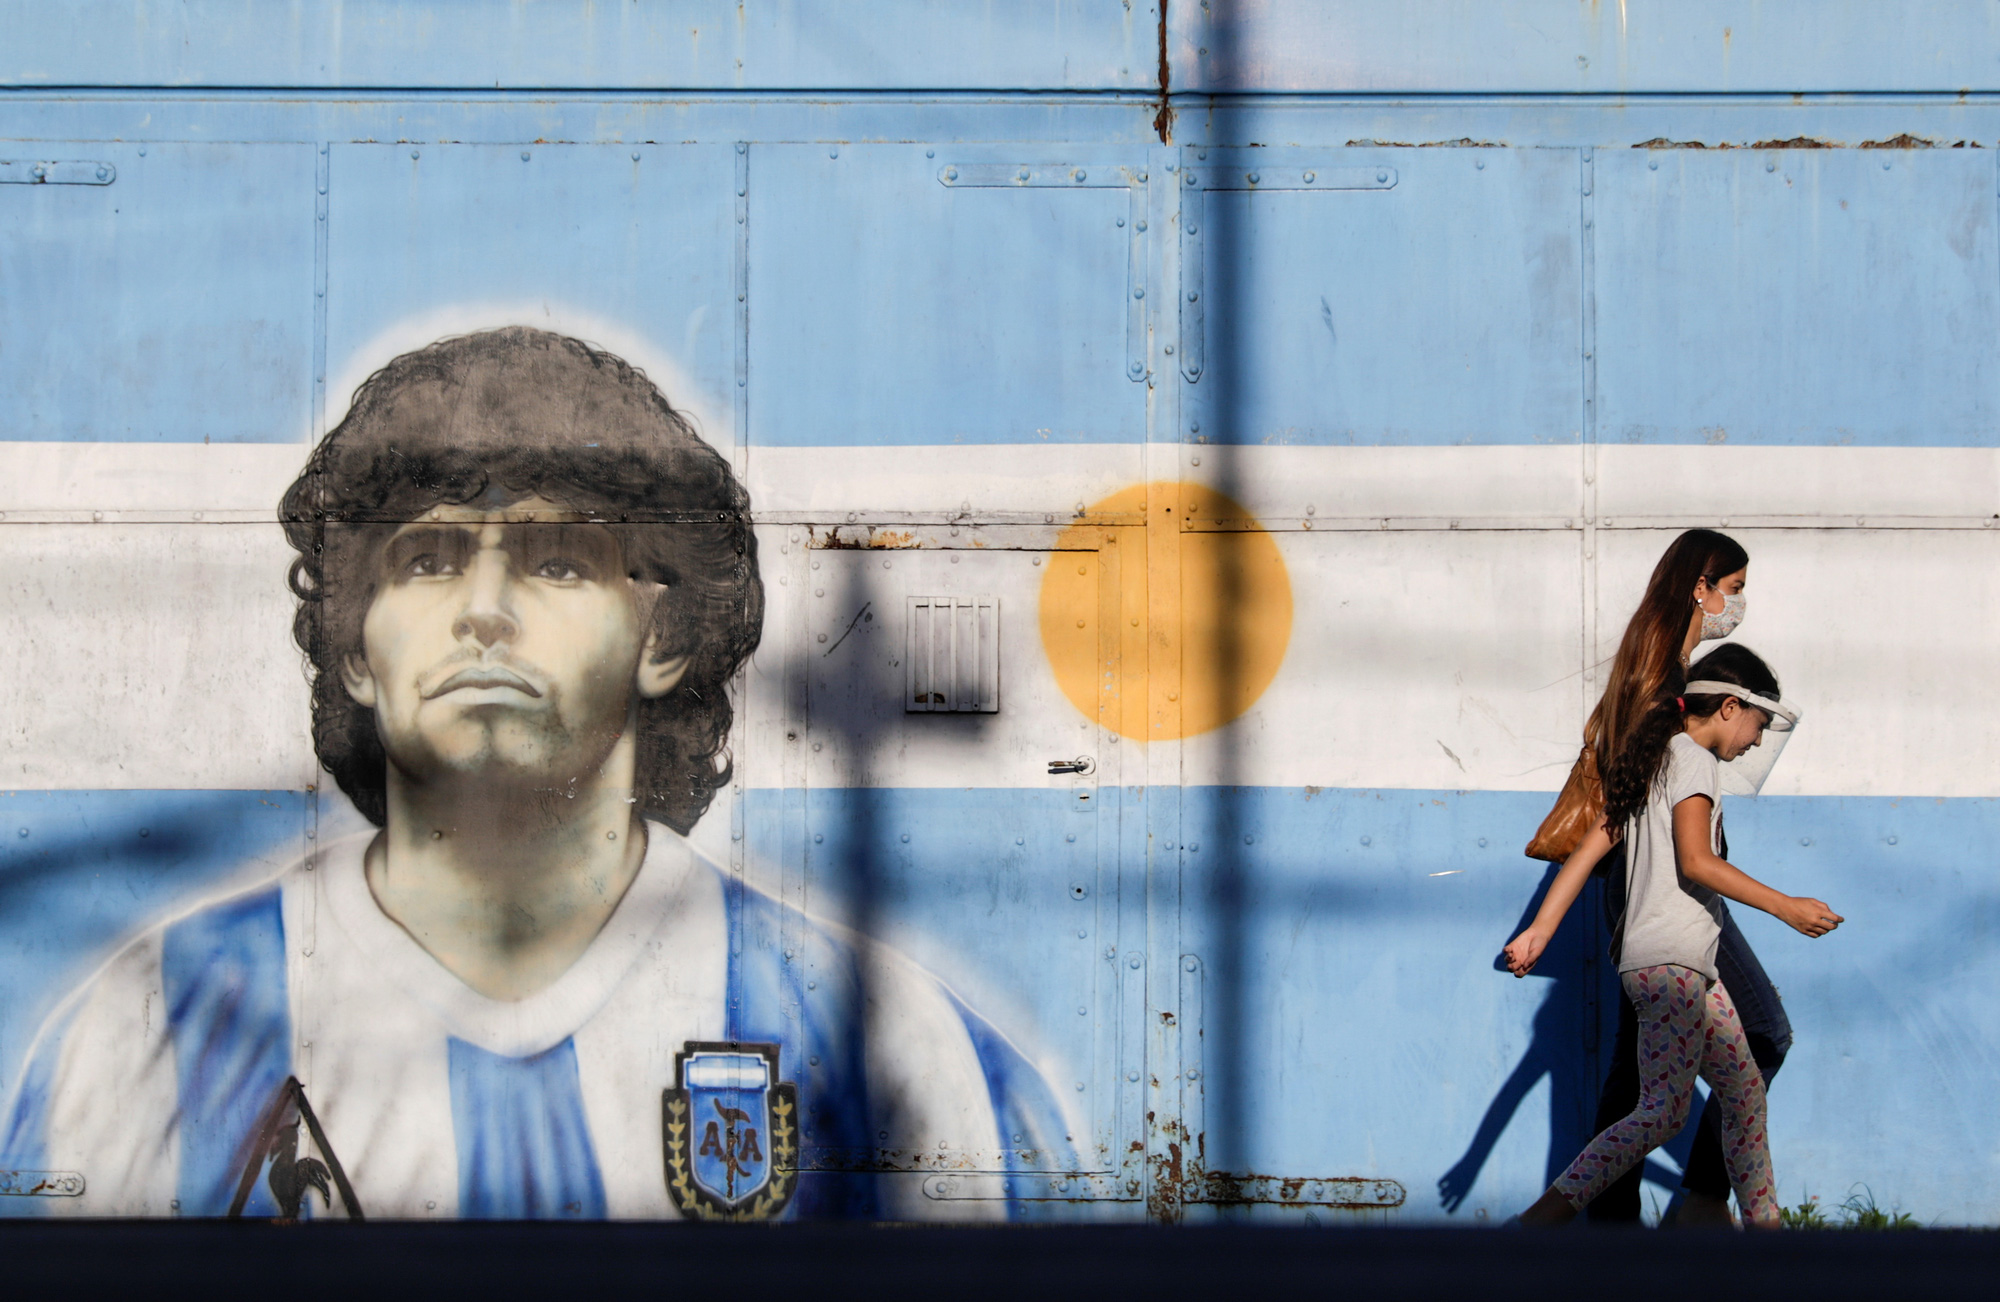 Giới bóng đá thế giới vừa mất đi một huyền thoại- Diego Maradona. Nhưng hình ảnh và những kỷ niệm về anh sẽ mãi mãi được giữ gìn. Hãy xem những hình ảnh tuyệt đẹp về Maradona, và tưởng niệm về một tài năng vĩ đại.